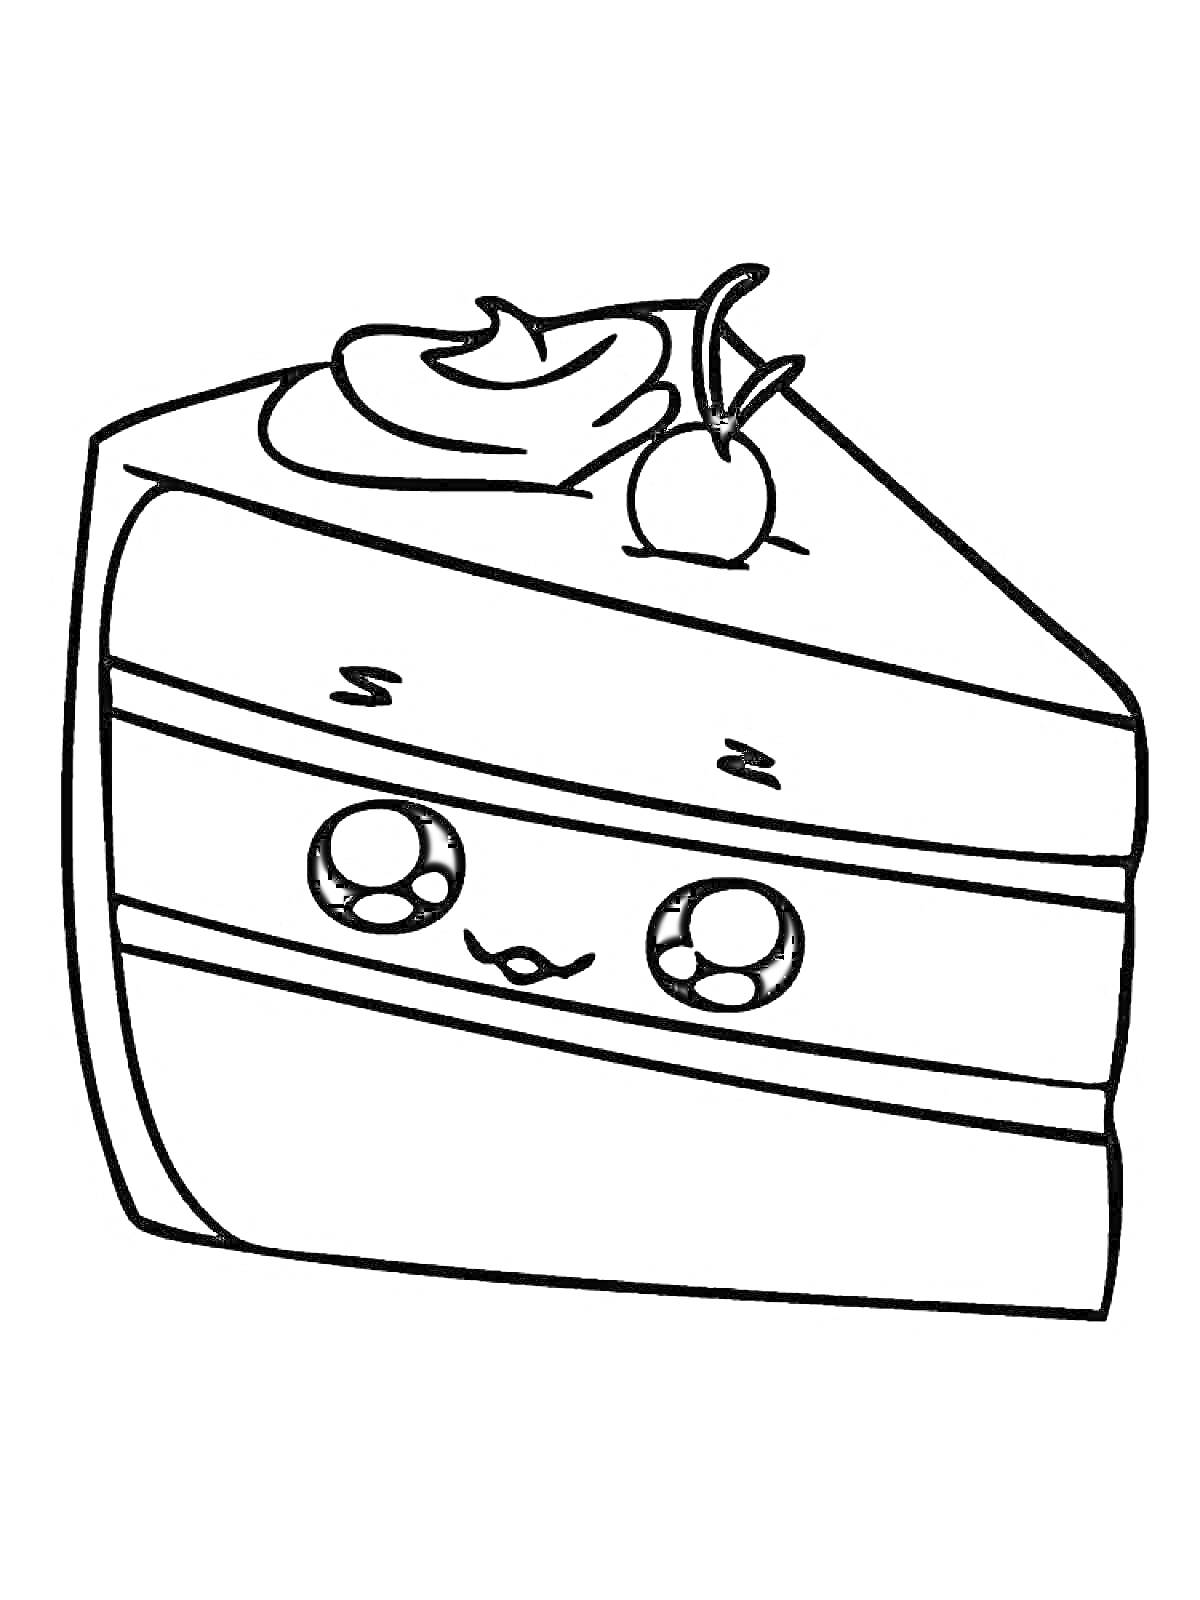 Раскраска Кусочек торта с глазками, с кремом и вишенкой на верхушке